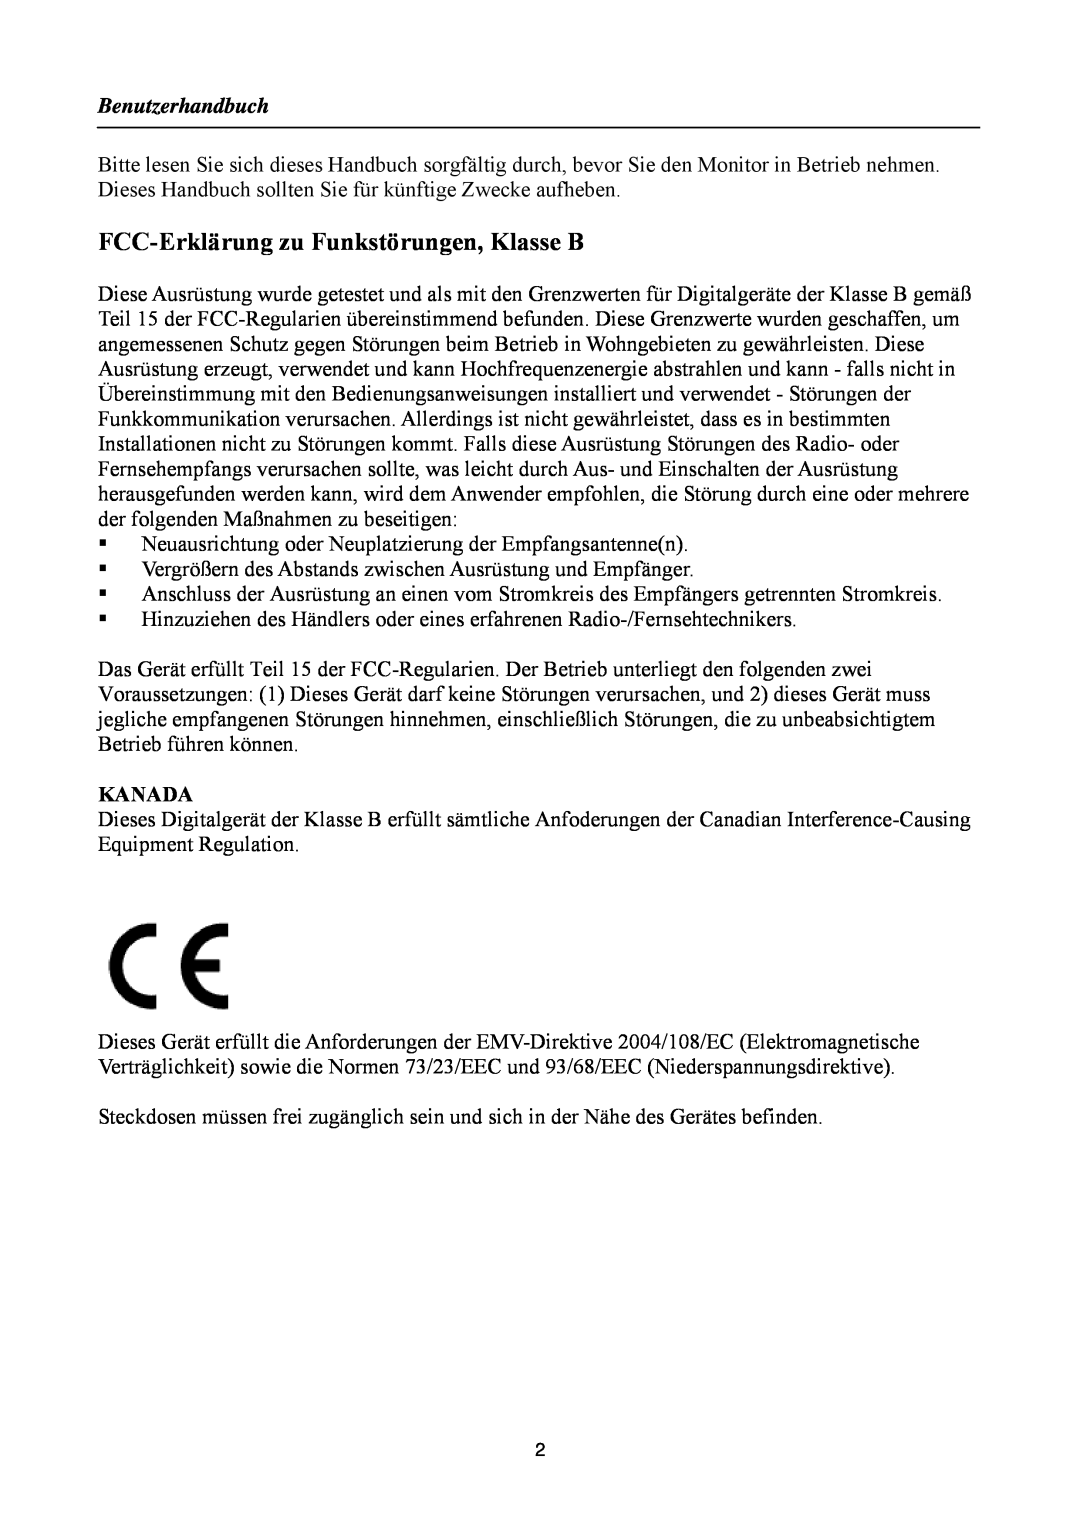 Hanns.G HZ281, HZ251, HZ194/HZ201, HZ221/HZ231 manual FCC-Erklärung zu Funkstörungen, Klasse B, Benutzerhandbuch, Kanada 